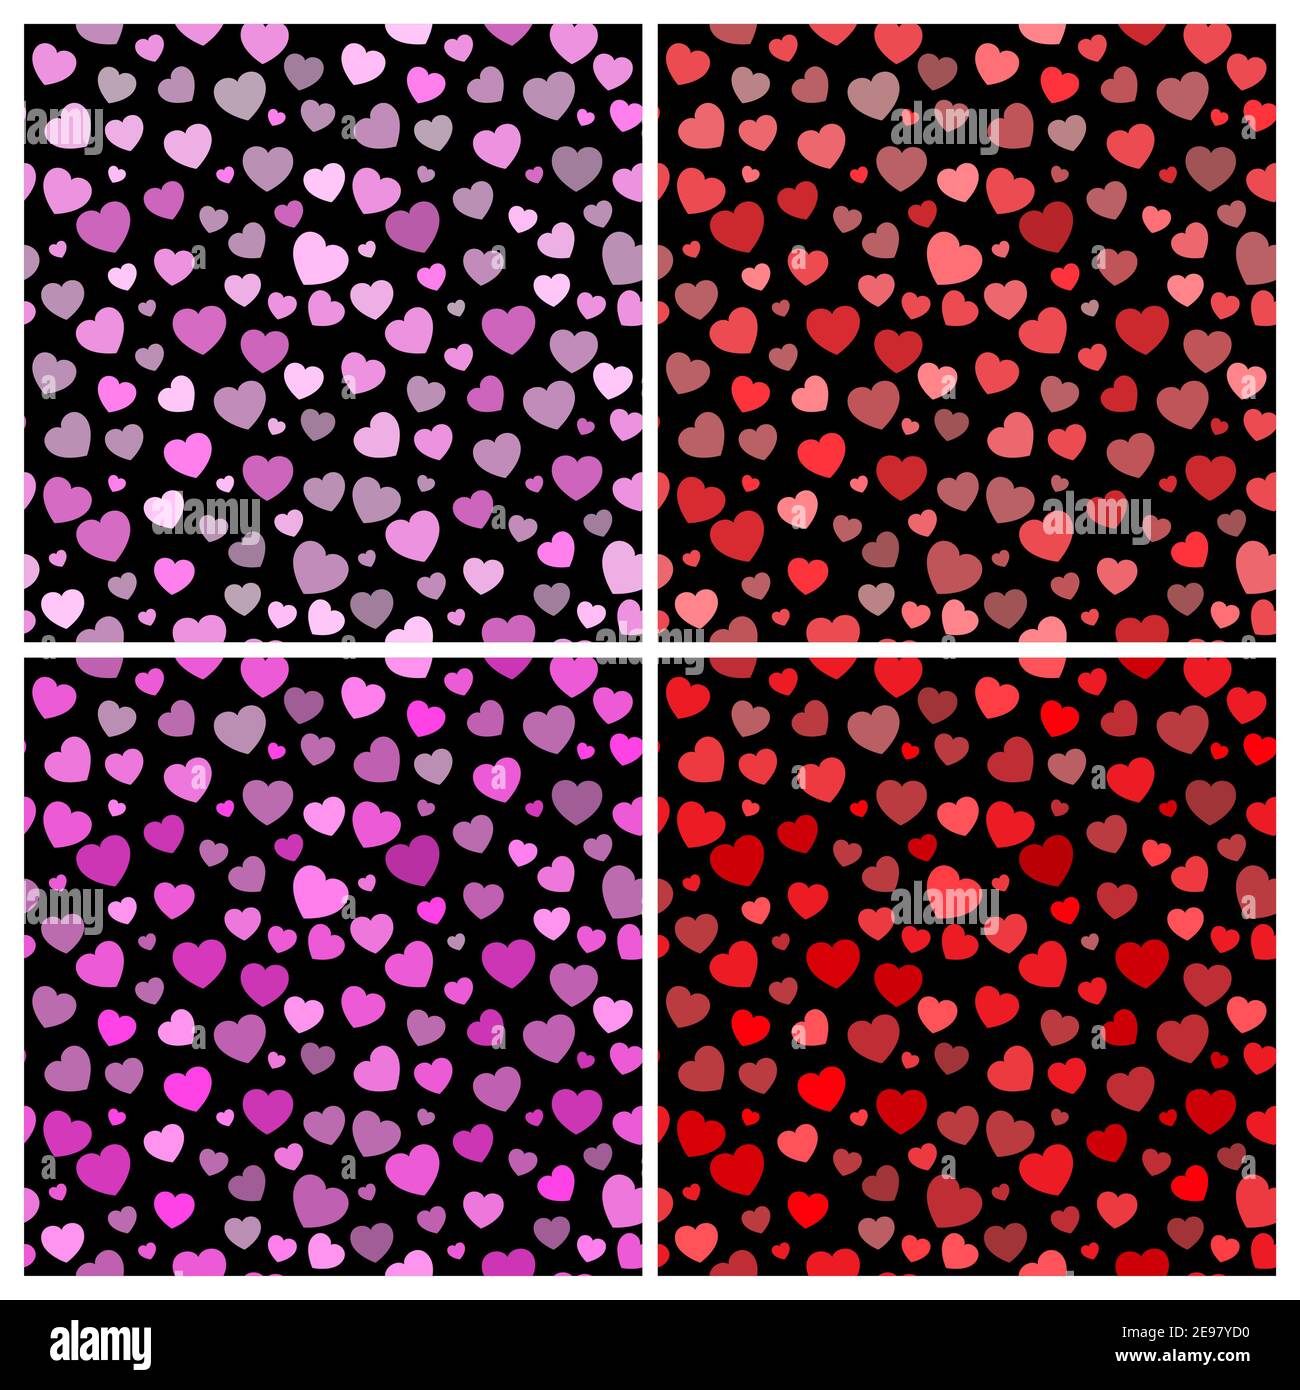 Valentines Herz Hintergrund. Schöne nahtlose Muster mit Herz Formen auf schwarzem Hintergrund gesetzt. Vektorhintergrund im eps 10 Format. Stock Vektor